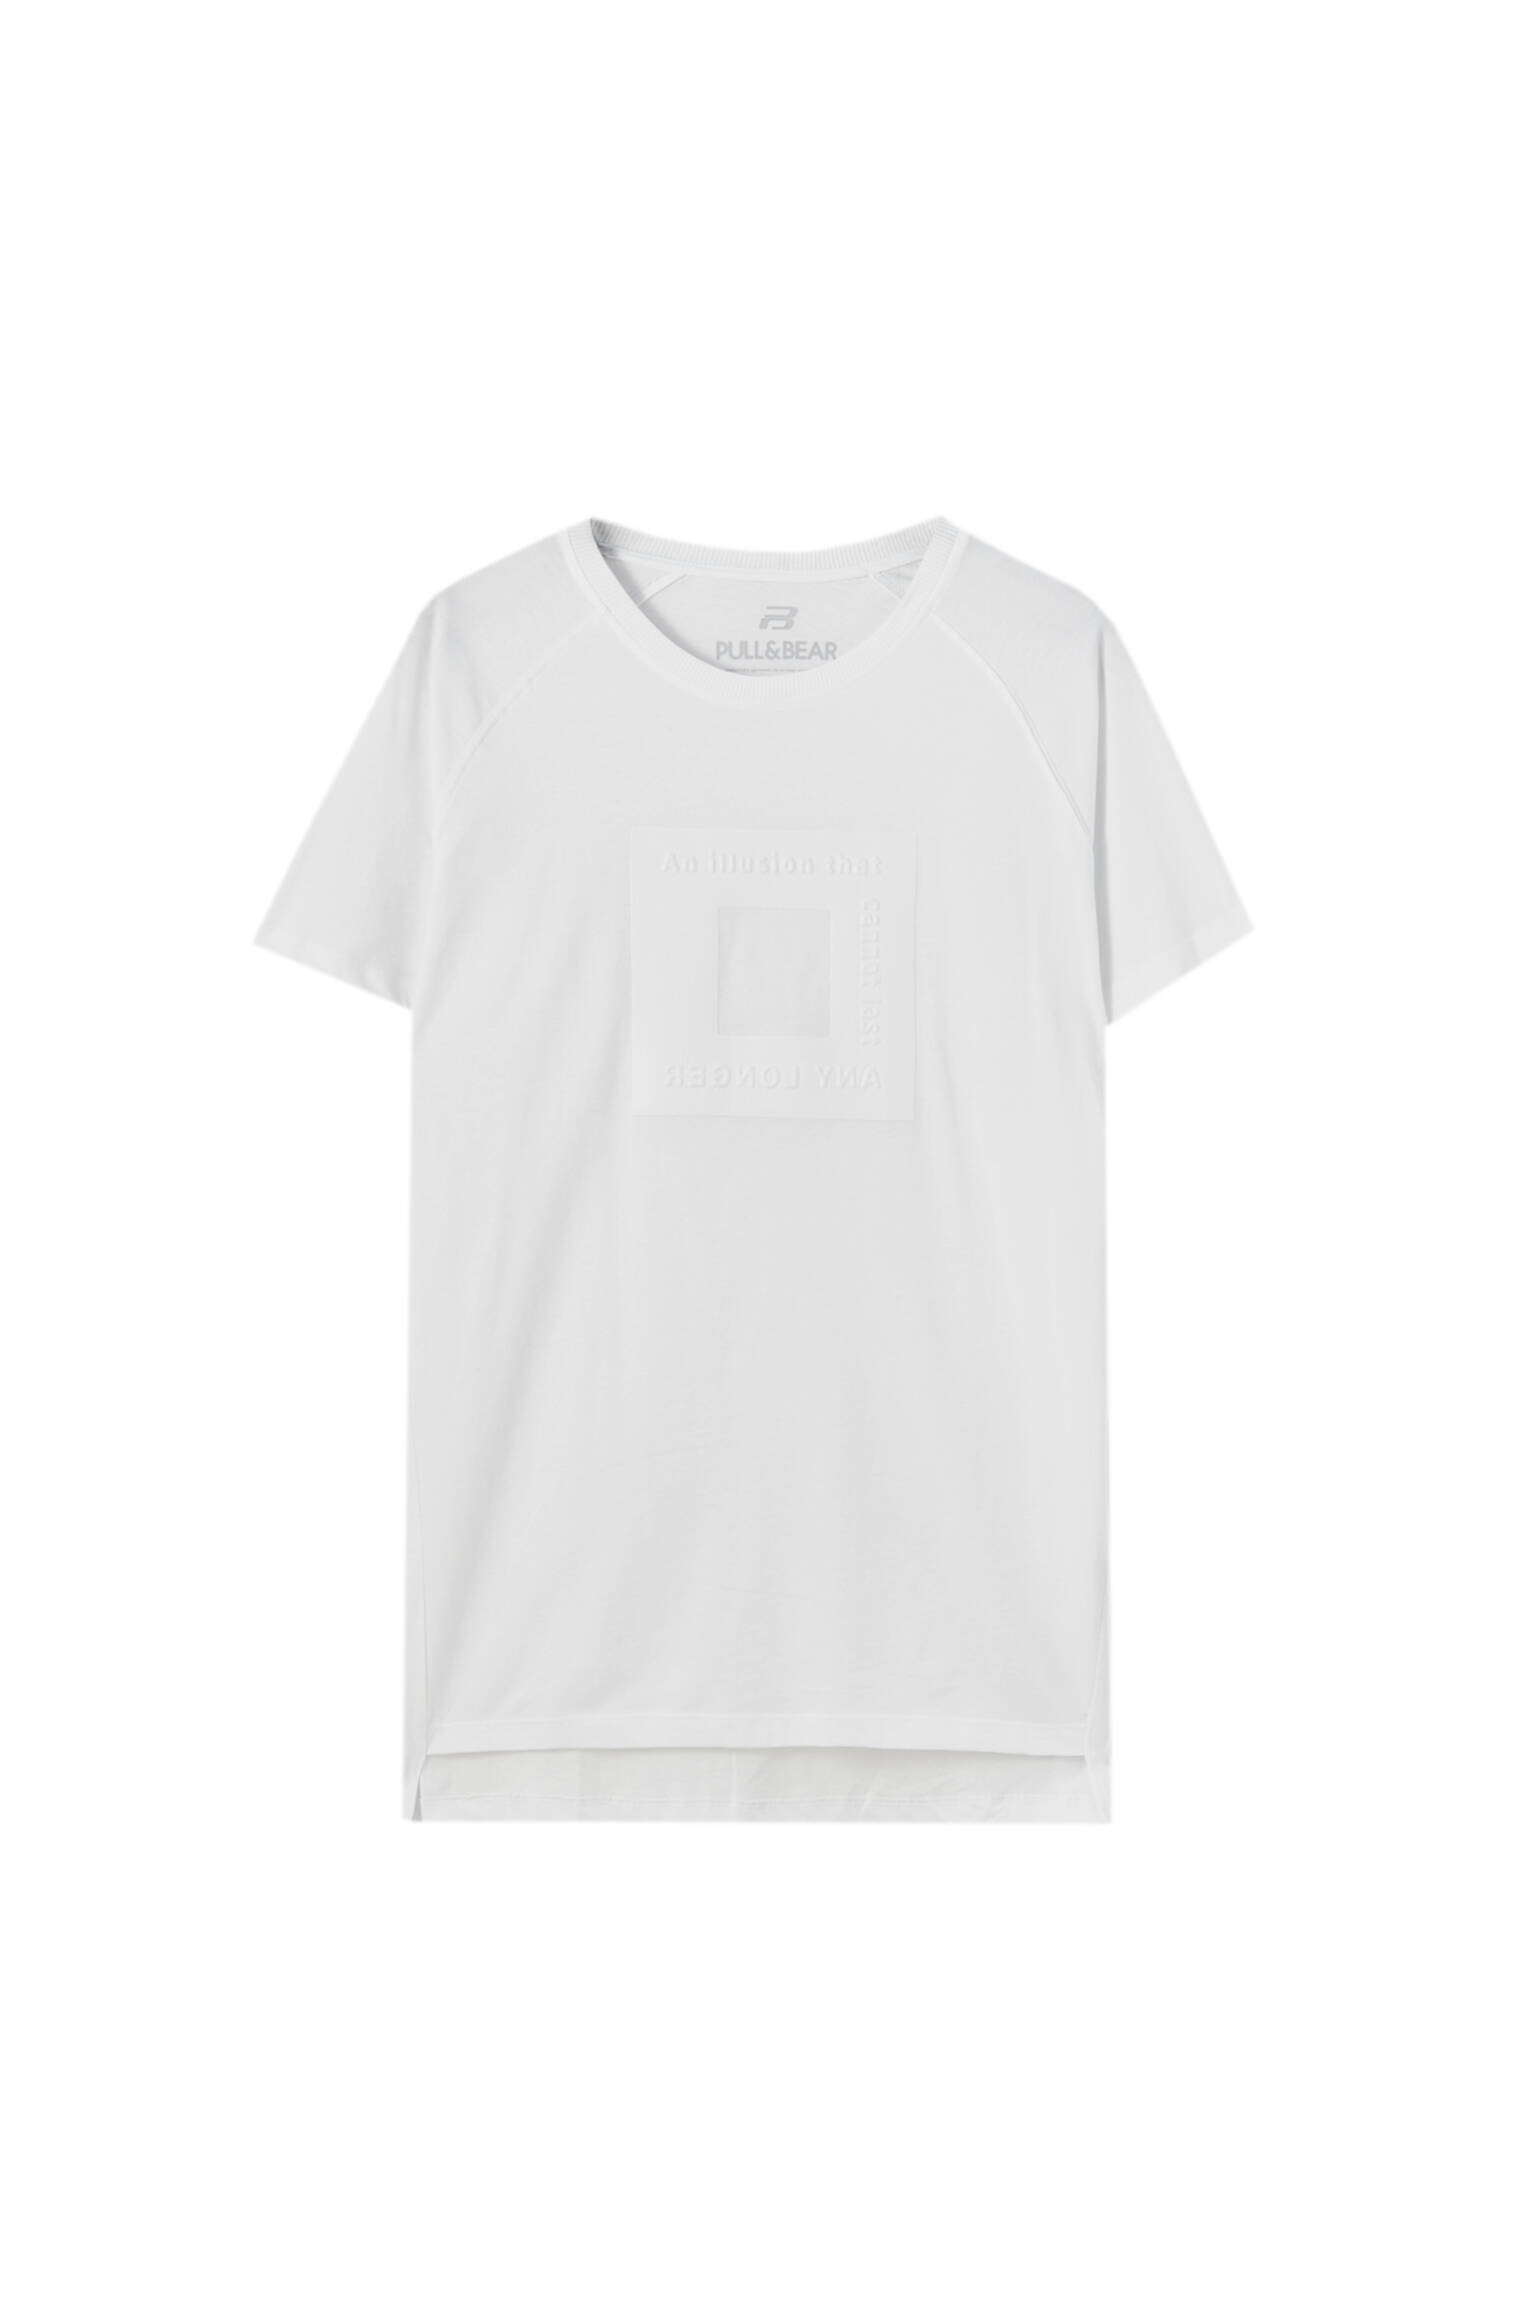 Pull&bear Homme T-shirt Blanc En Coton Mélangé à Manches Courtes Et Col Rond Avec Détail En Relief En Similicuir. Blanc CassÉ S